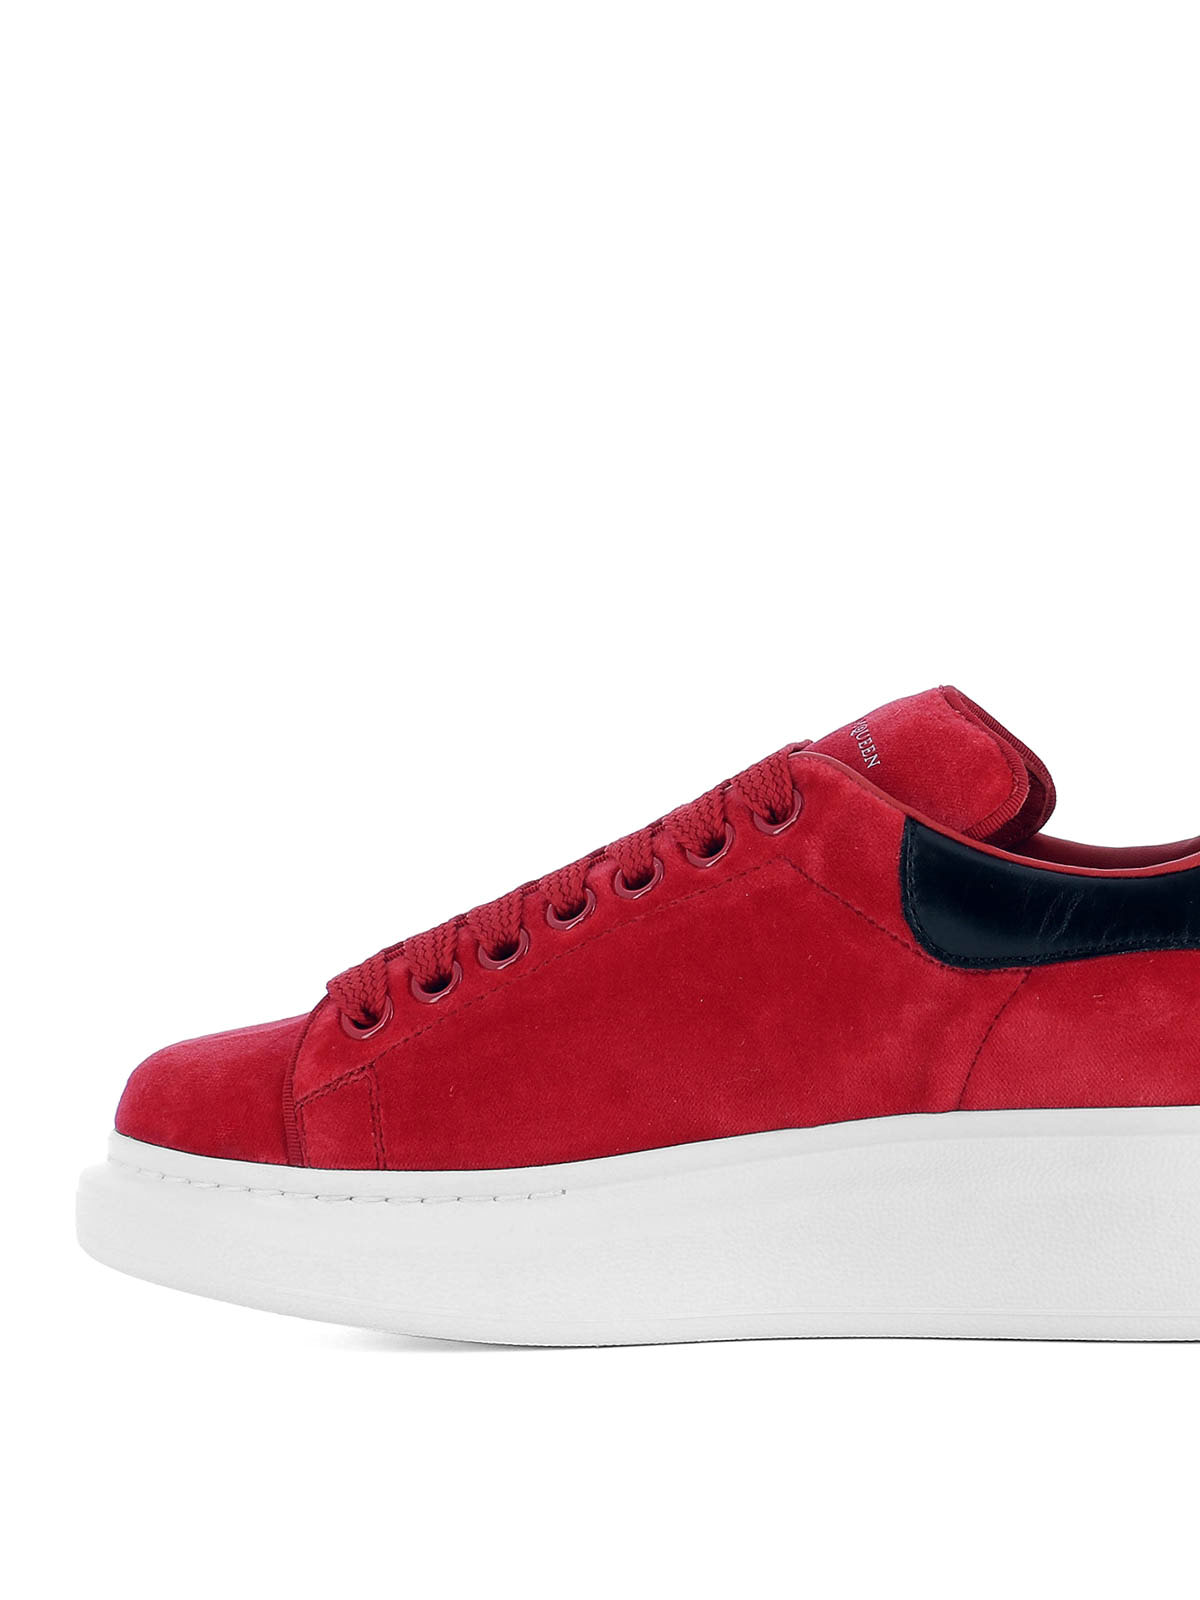 iKRIX alexander mcqueen trainers oversize red velvet sneakers 00000115253f00s003